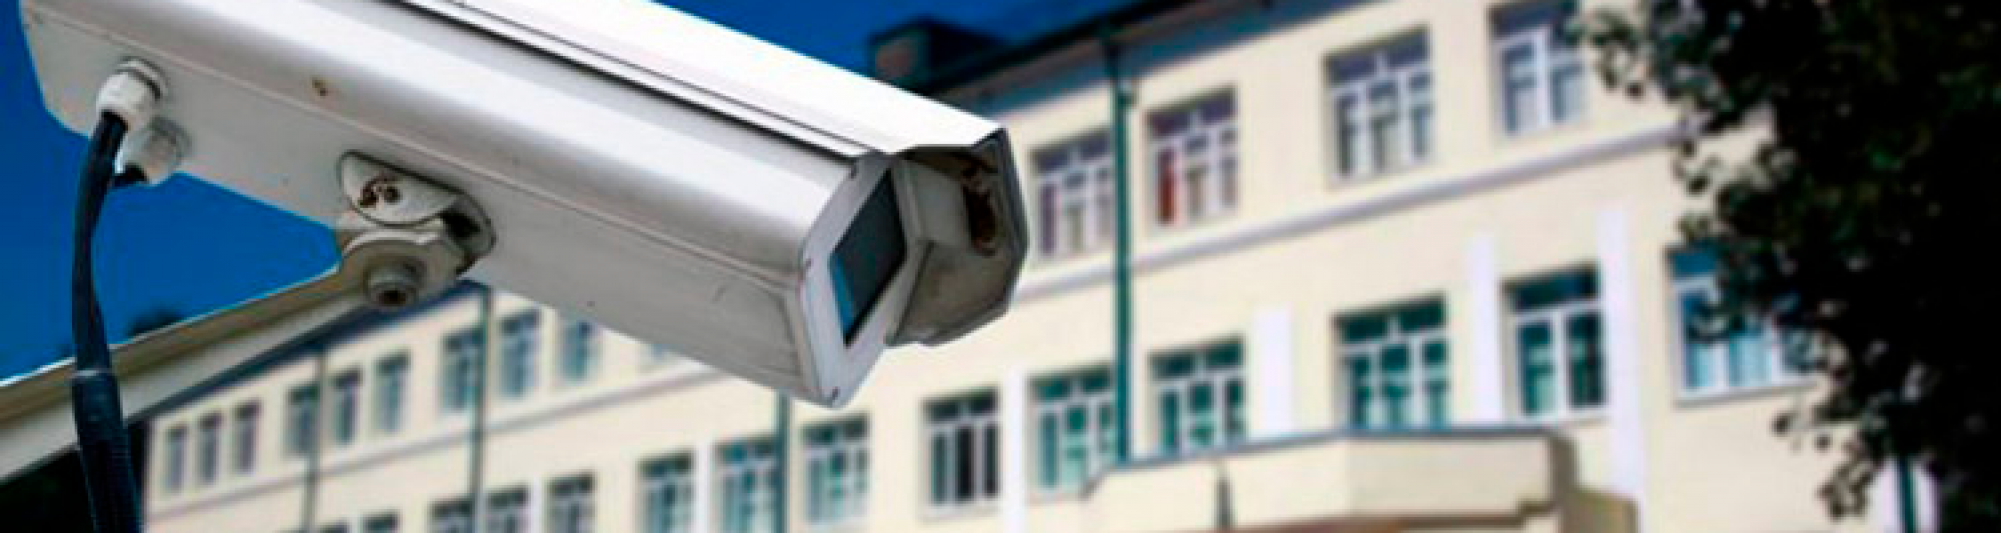 К 2020 году на территории всех детских муниципальных образовательных учреждений установят системы видеонаблюдения